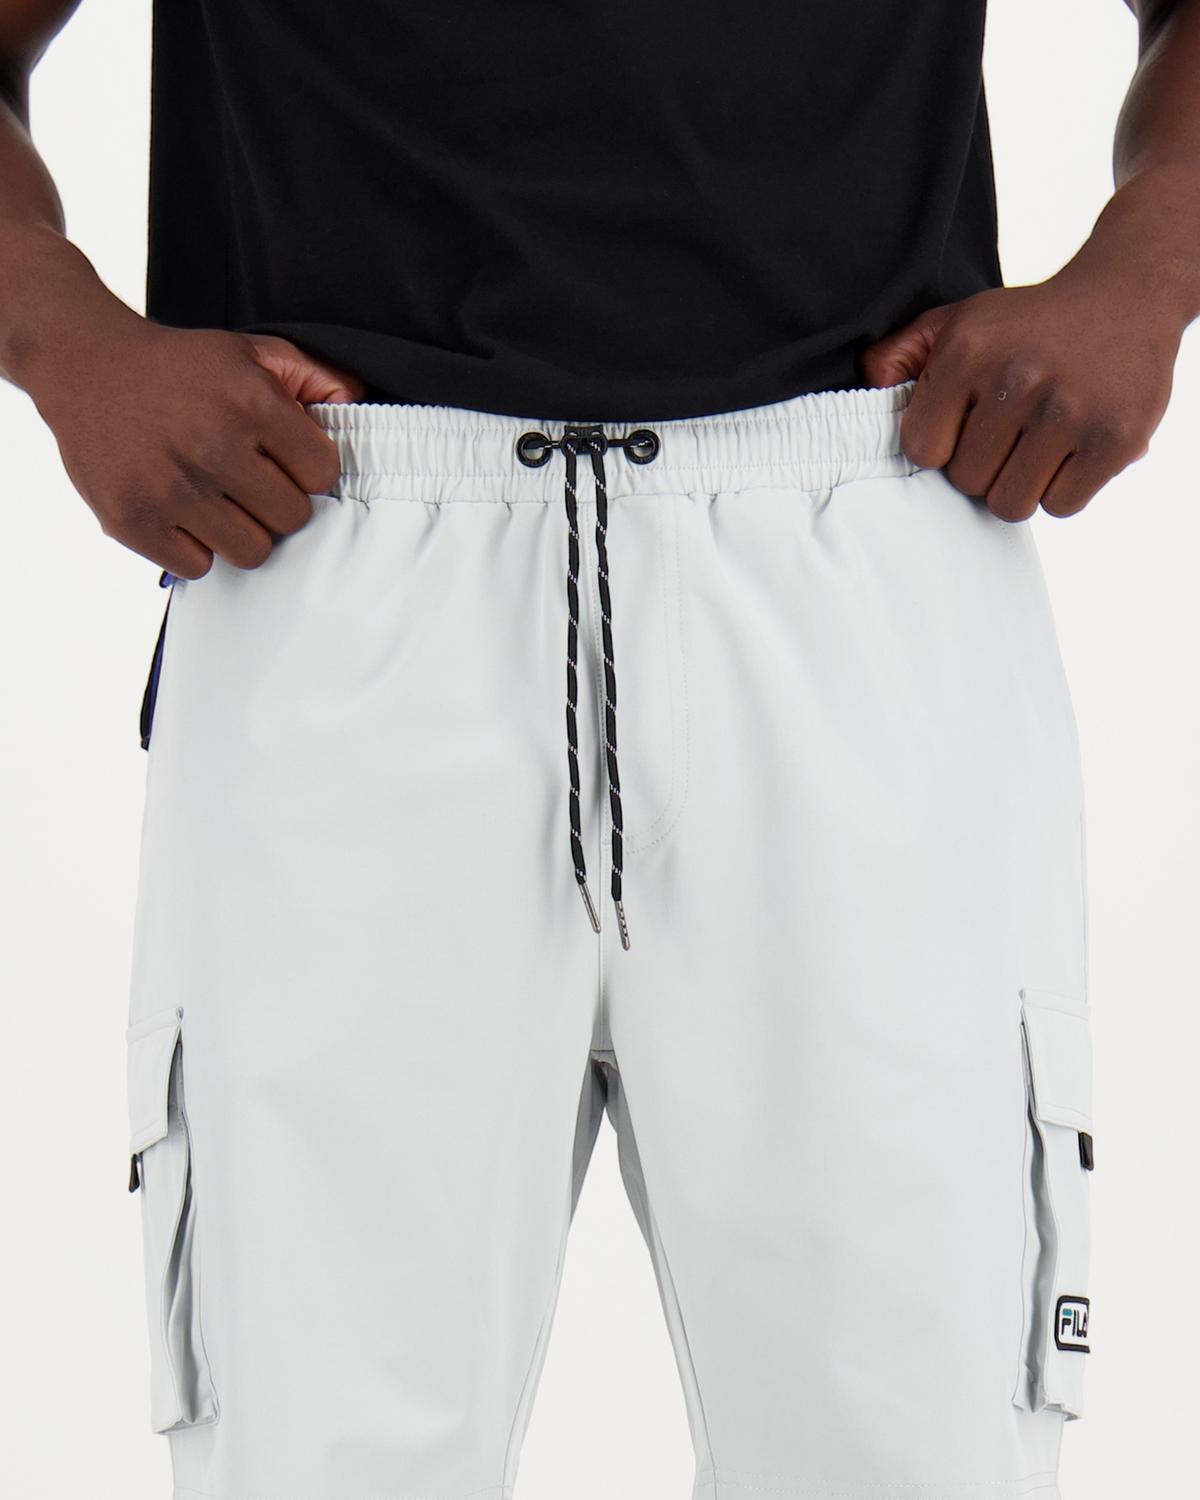 FILA Blanc Shorts Mens -  Light Grey